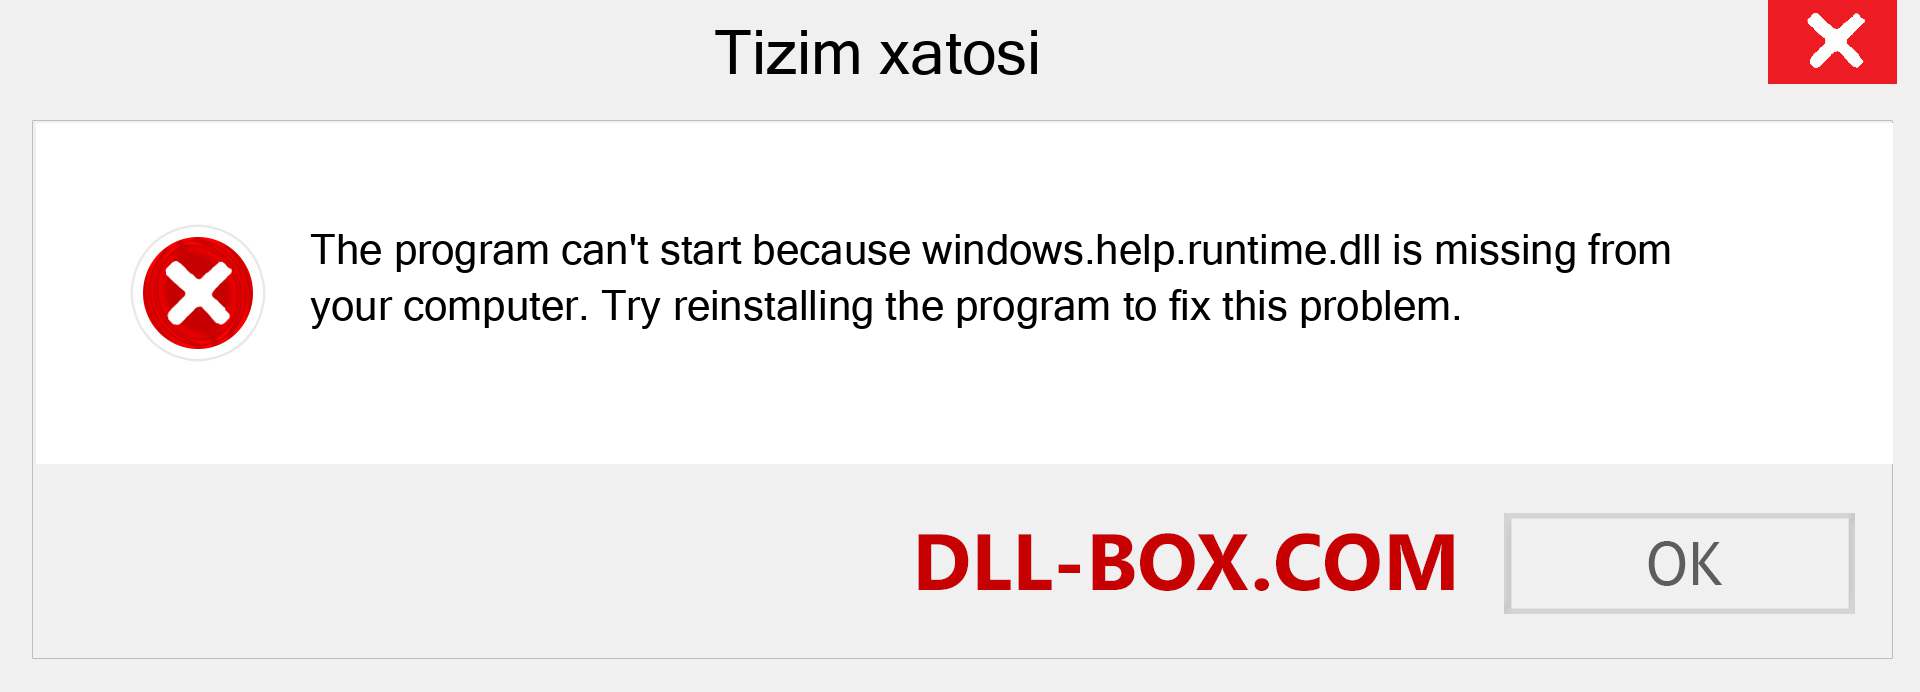 windows.help.runtime.dll fayli yo'qolganmi?. Windows 7, 8, 10 uchun yuklab olish - Windowsda windows.help.runtime dll etishmayotgan xatoni tuzating, rasmlar, rasmlar